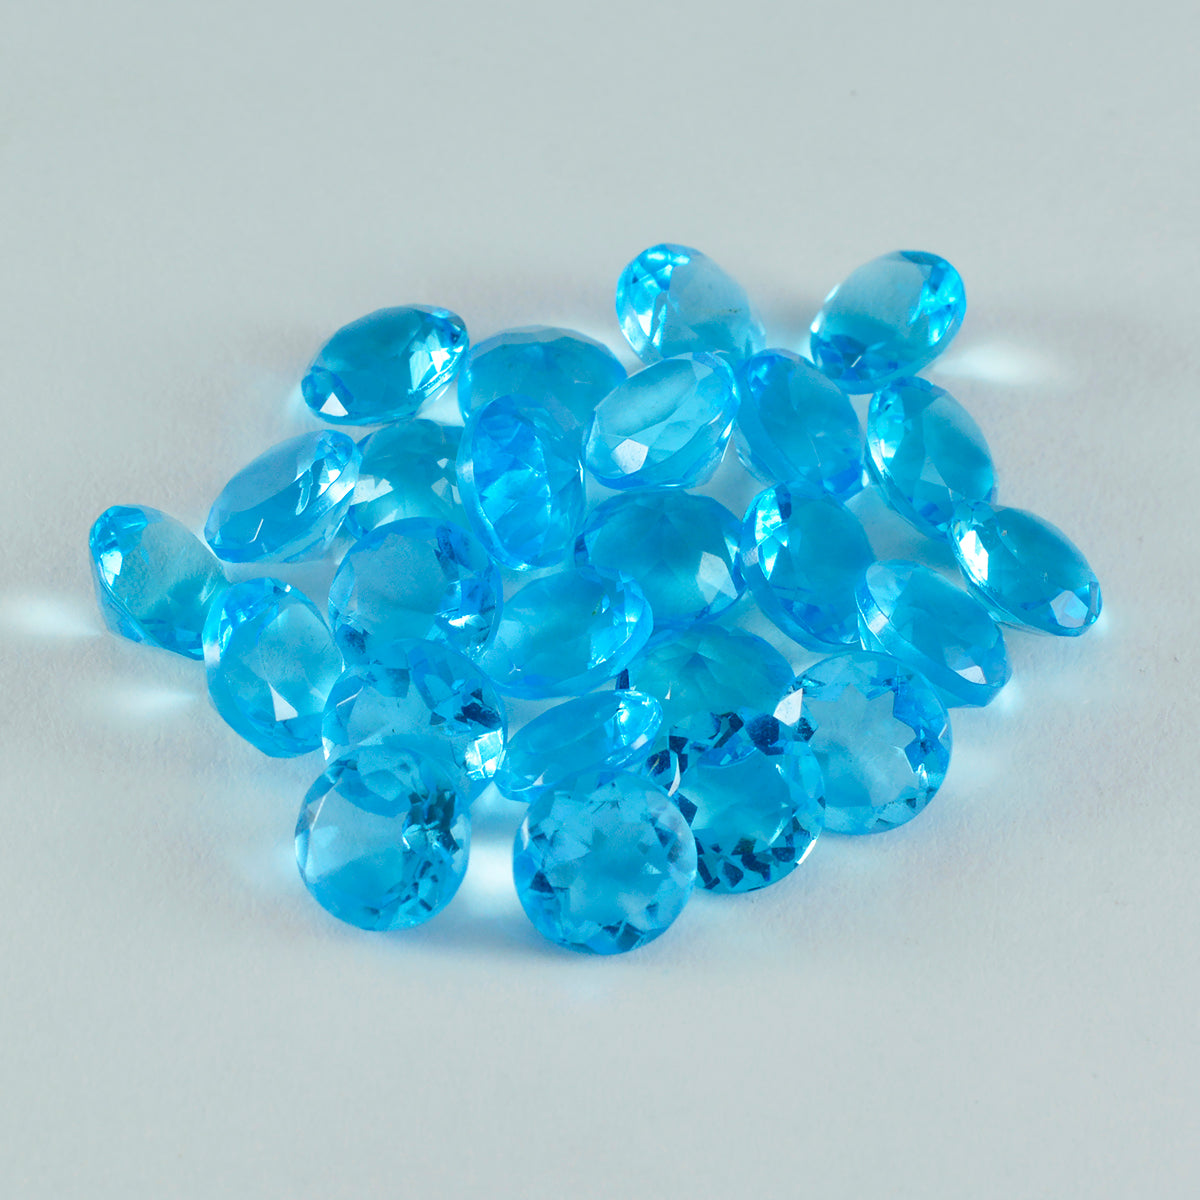 Riyogems 1pc topaze bleue cz facettes 7x7mm forme ronde qualité incroyable pierre en vrac